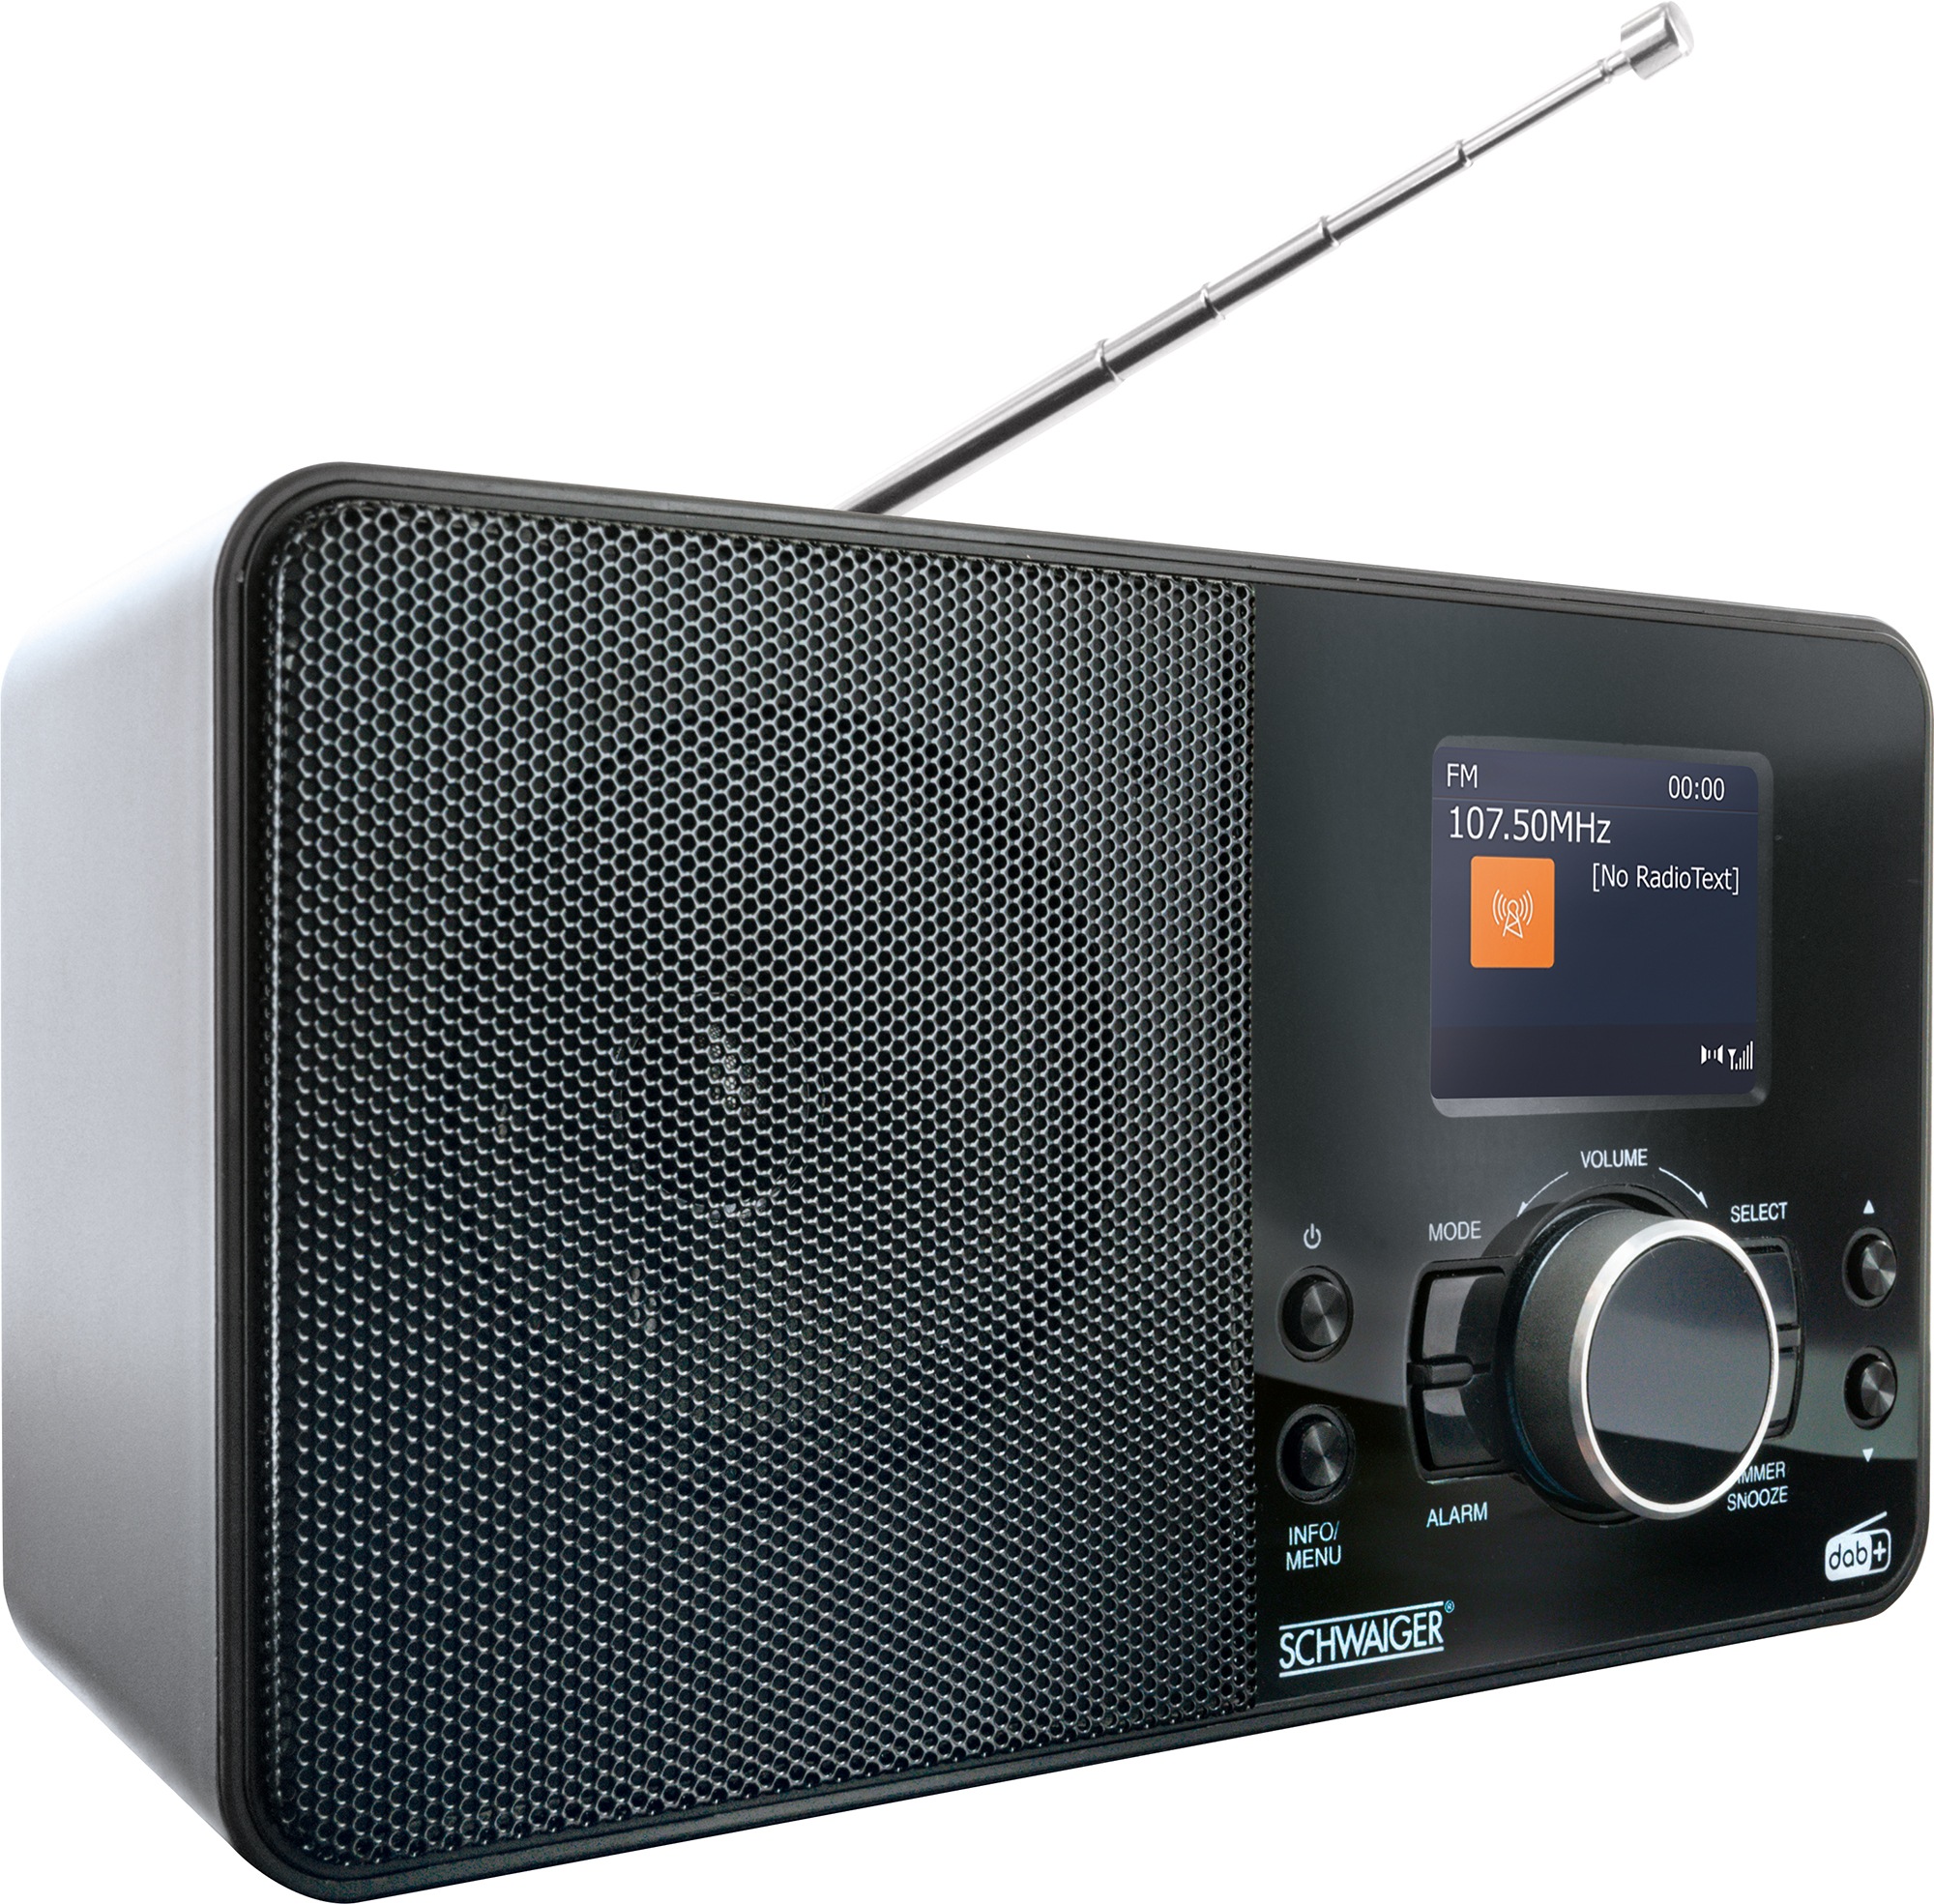 Schwaiger Digital Radio DAB/DAB+ tragbar mit UKW und DAB